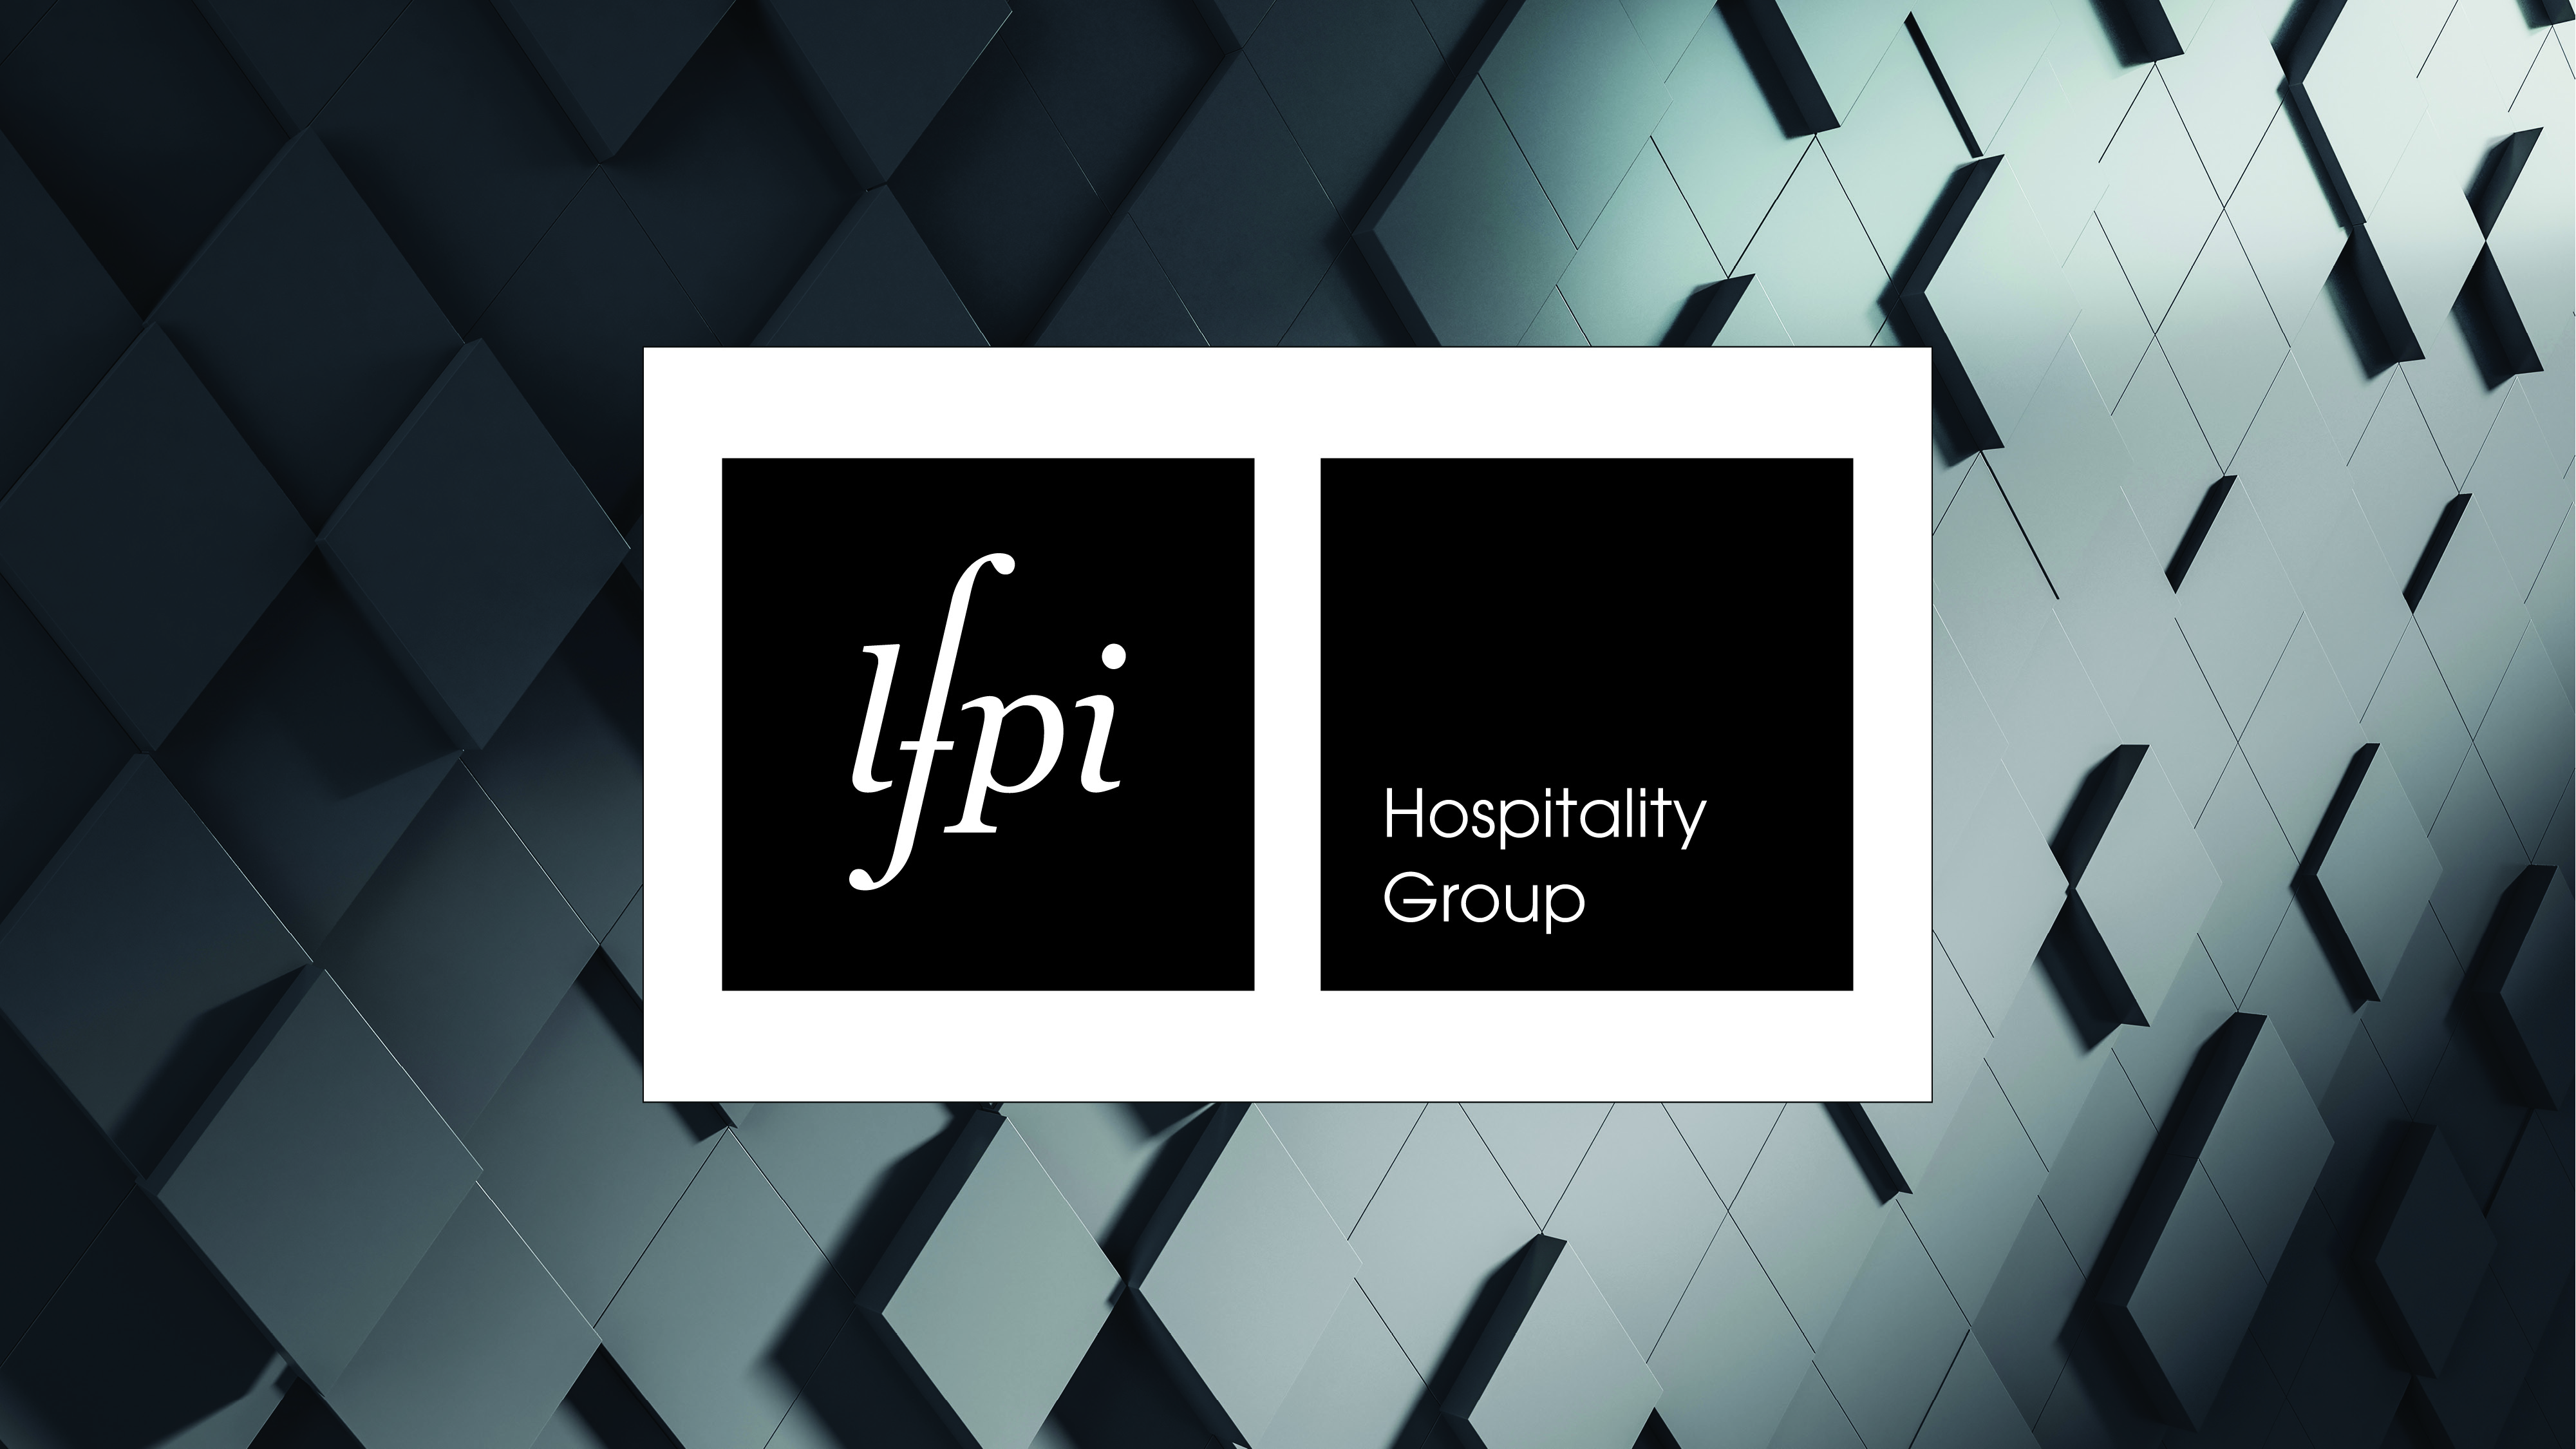 LFPI Hotels Management